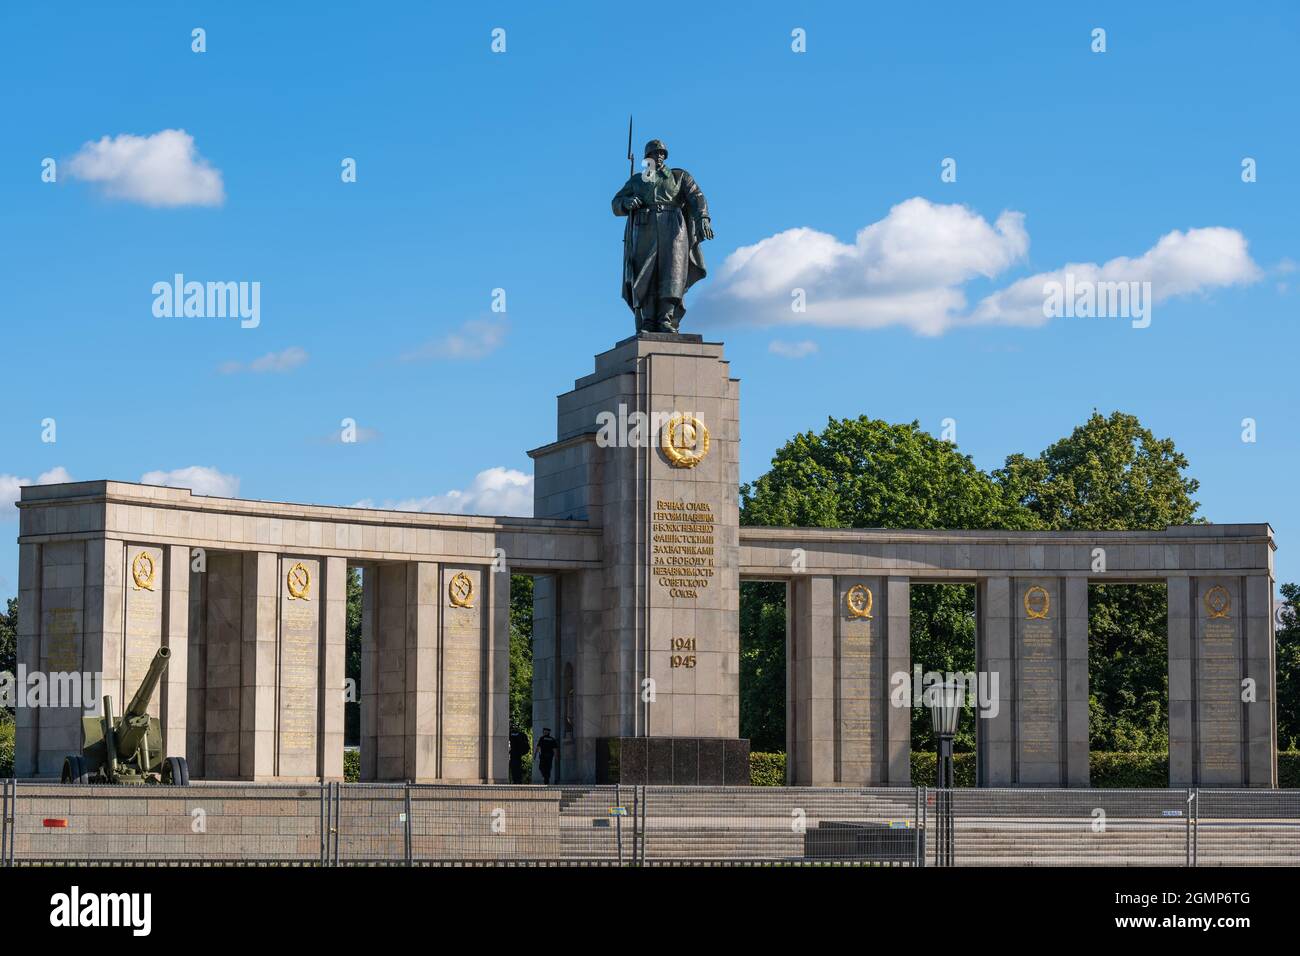 Berlin, Deutschland - 31. Juli 2021: Das sowjetische Kriegsdenkmal in Tiergarten, das von der Sowjetunion zum Gedenken an Soldaten der sowjetischen Streitkräfte errichtet wurde Stockfoto